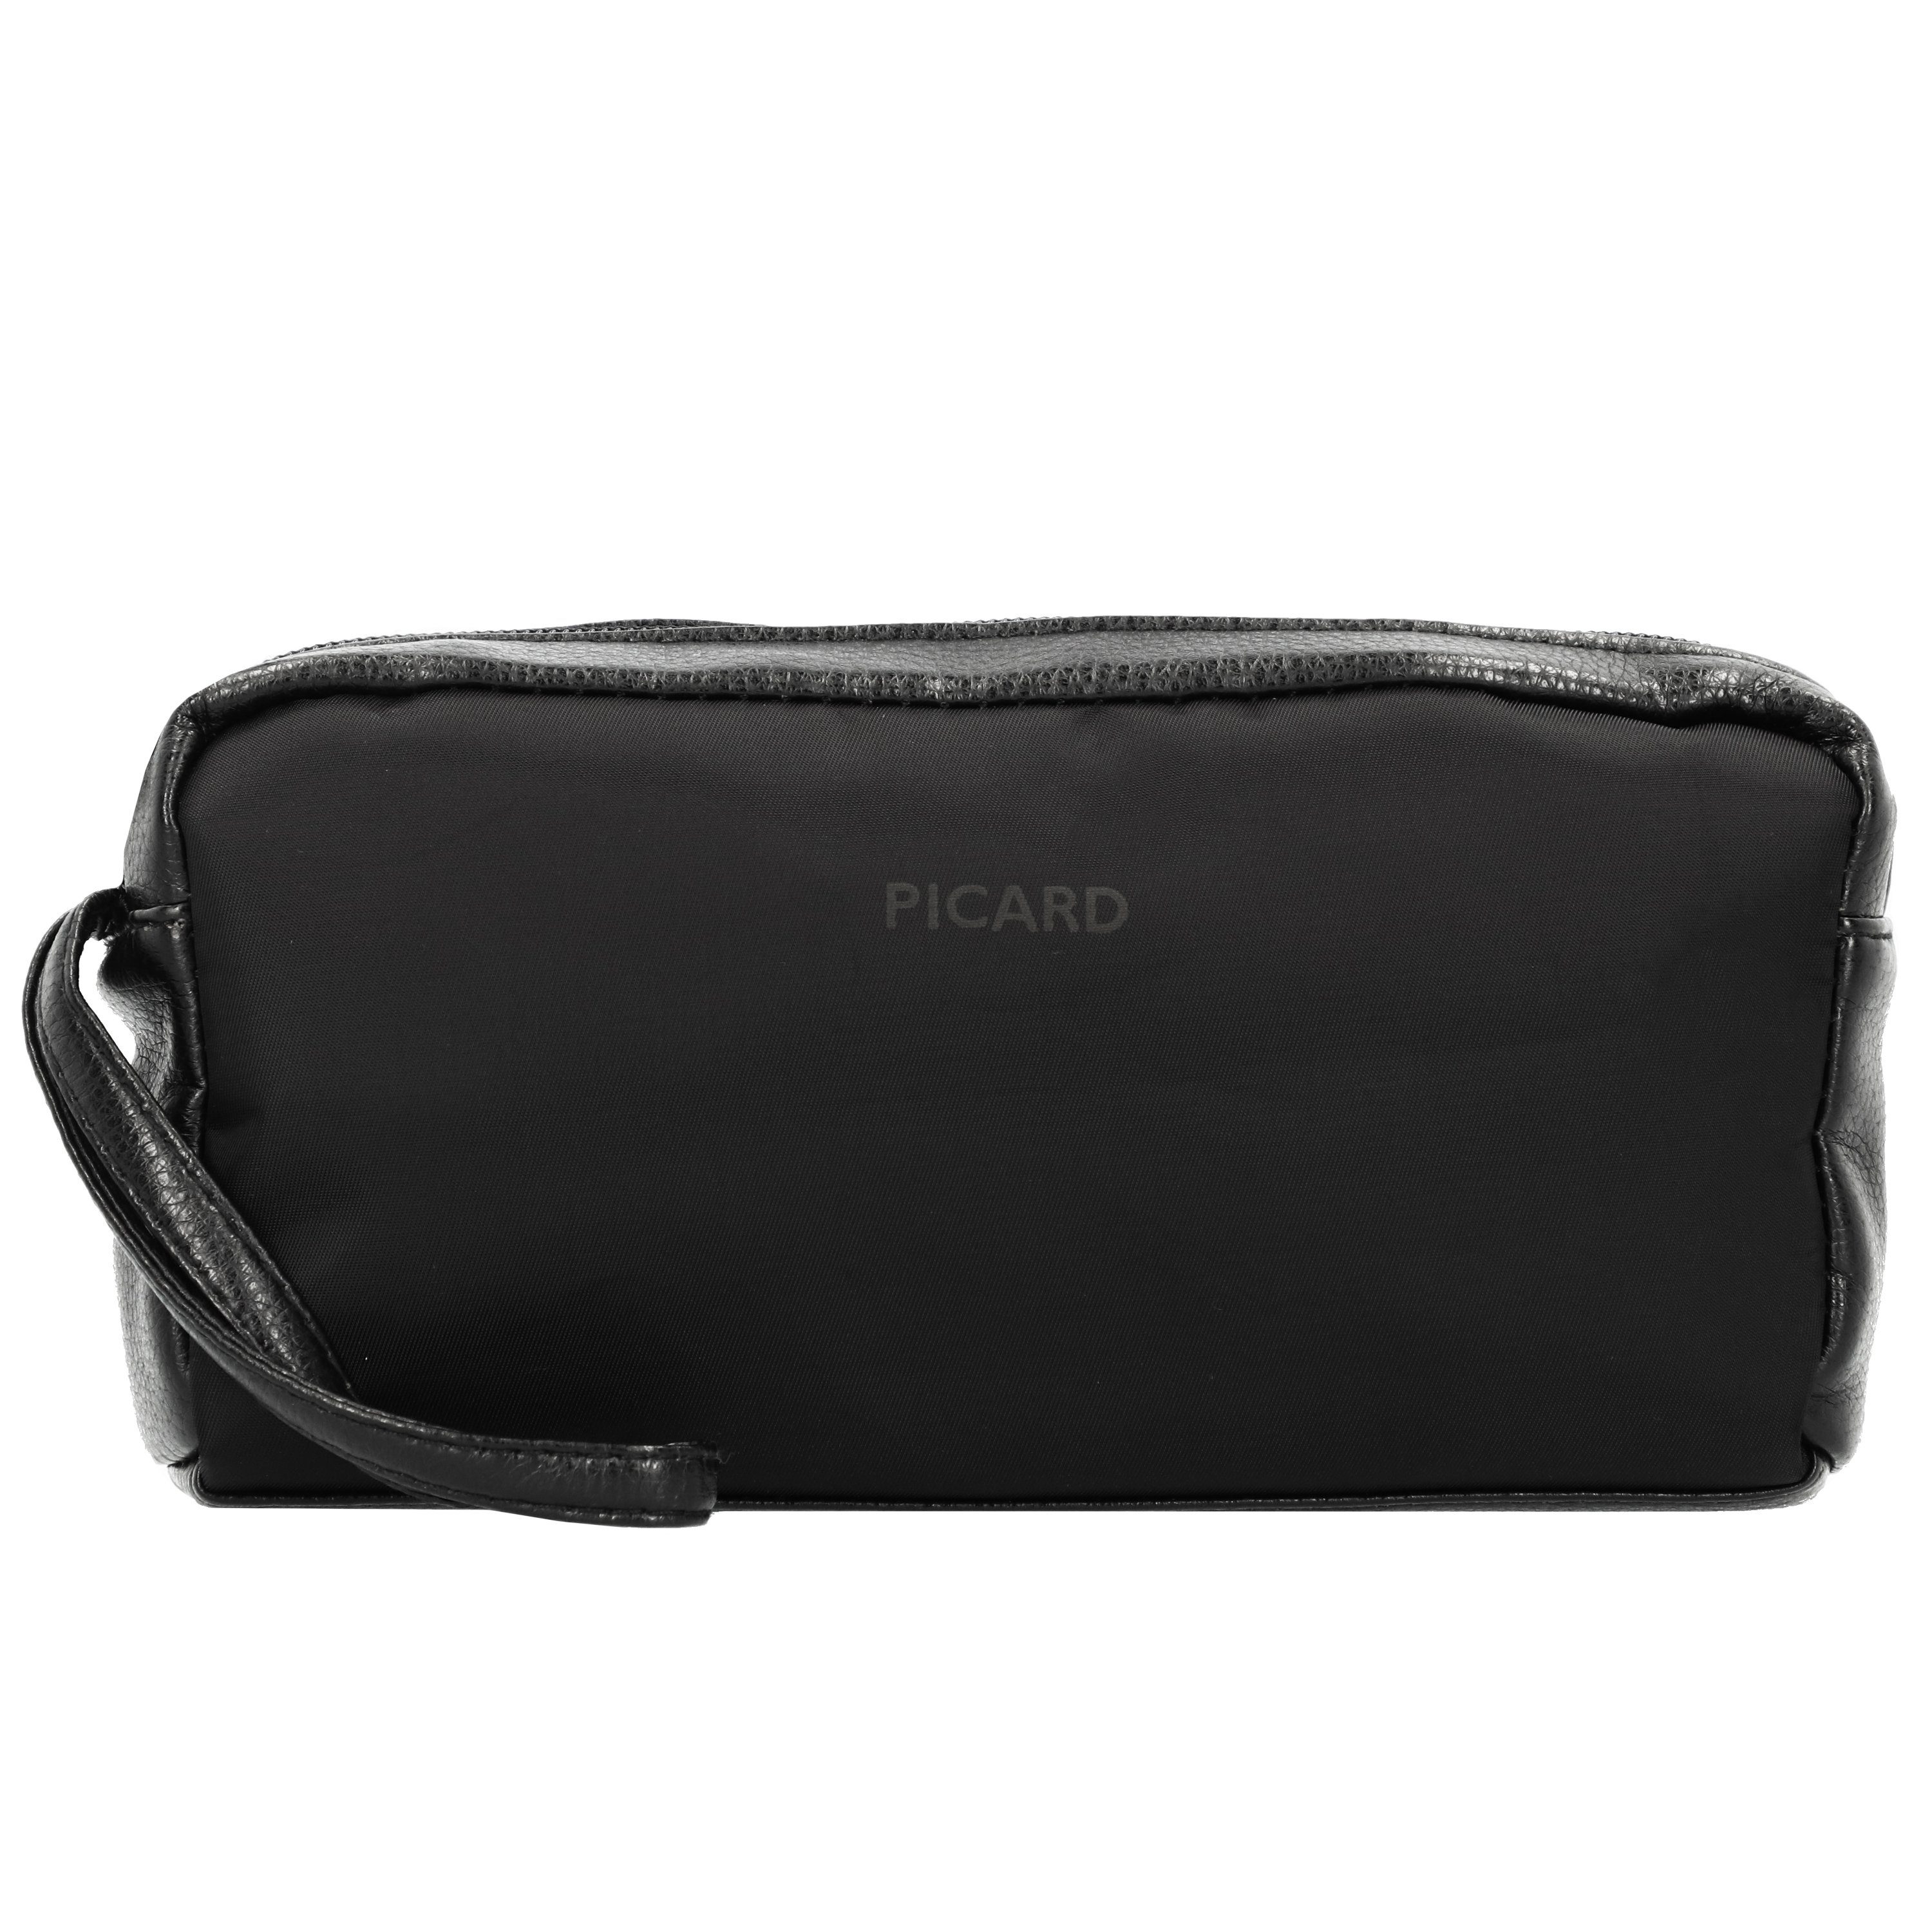 Picard Kosmetiktasche »Valise«, Nylon, Außenmaße (LxBxH): 20cm x 4cm x 11cm  online kaufen | OTTO